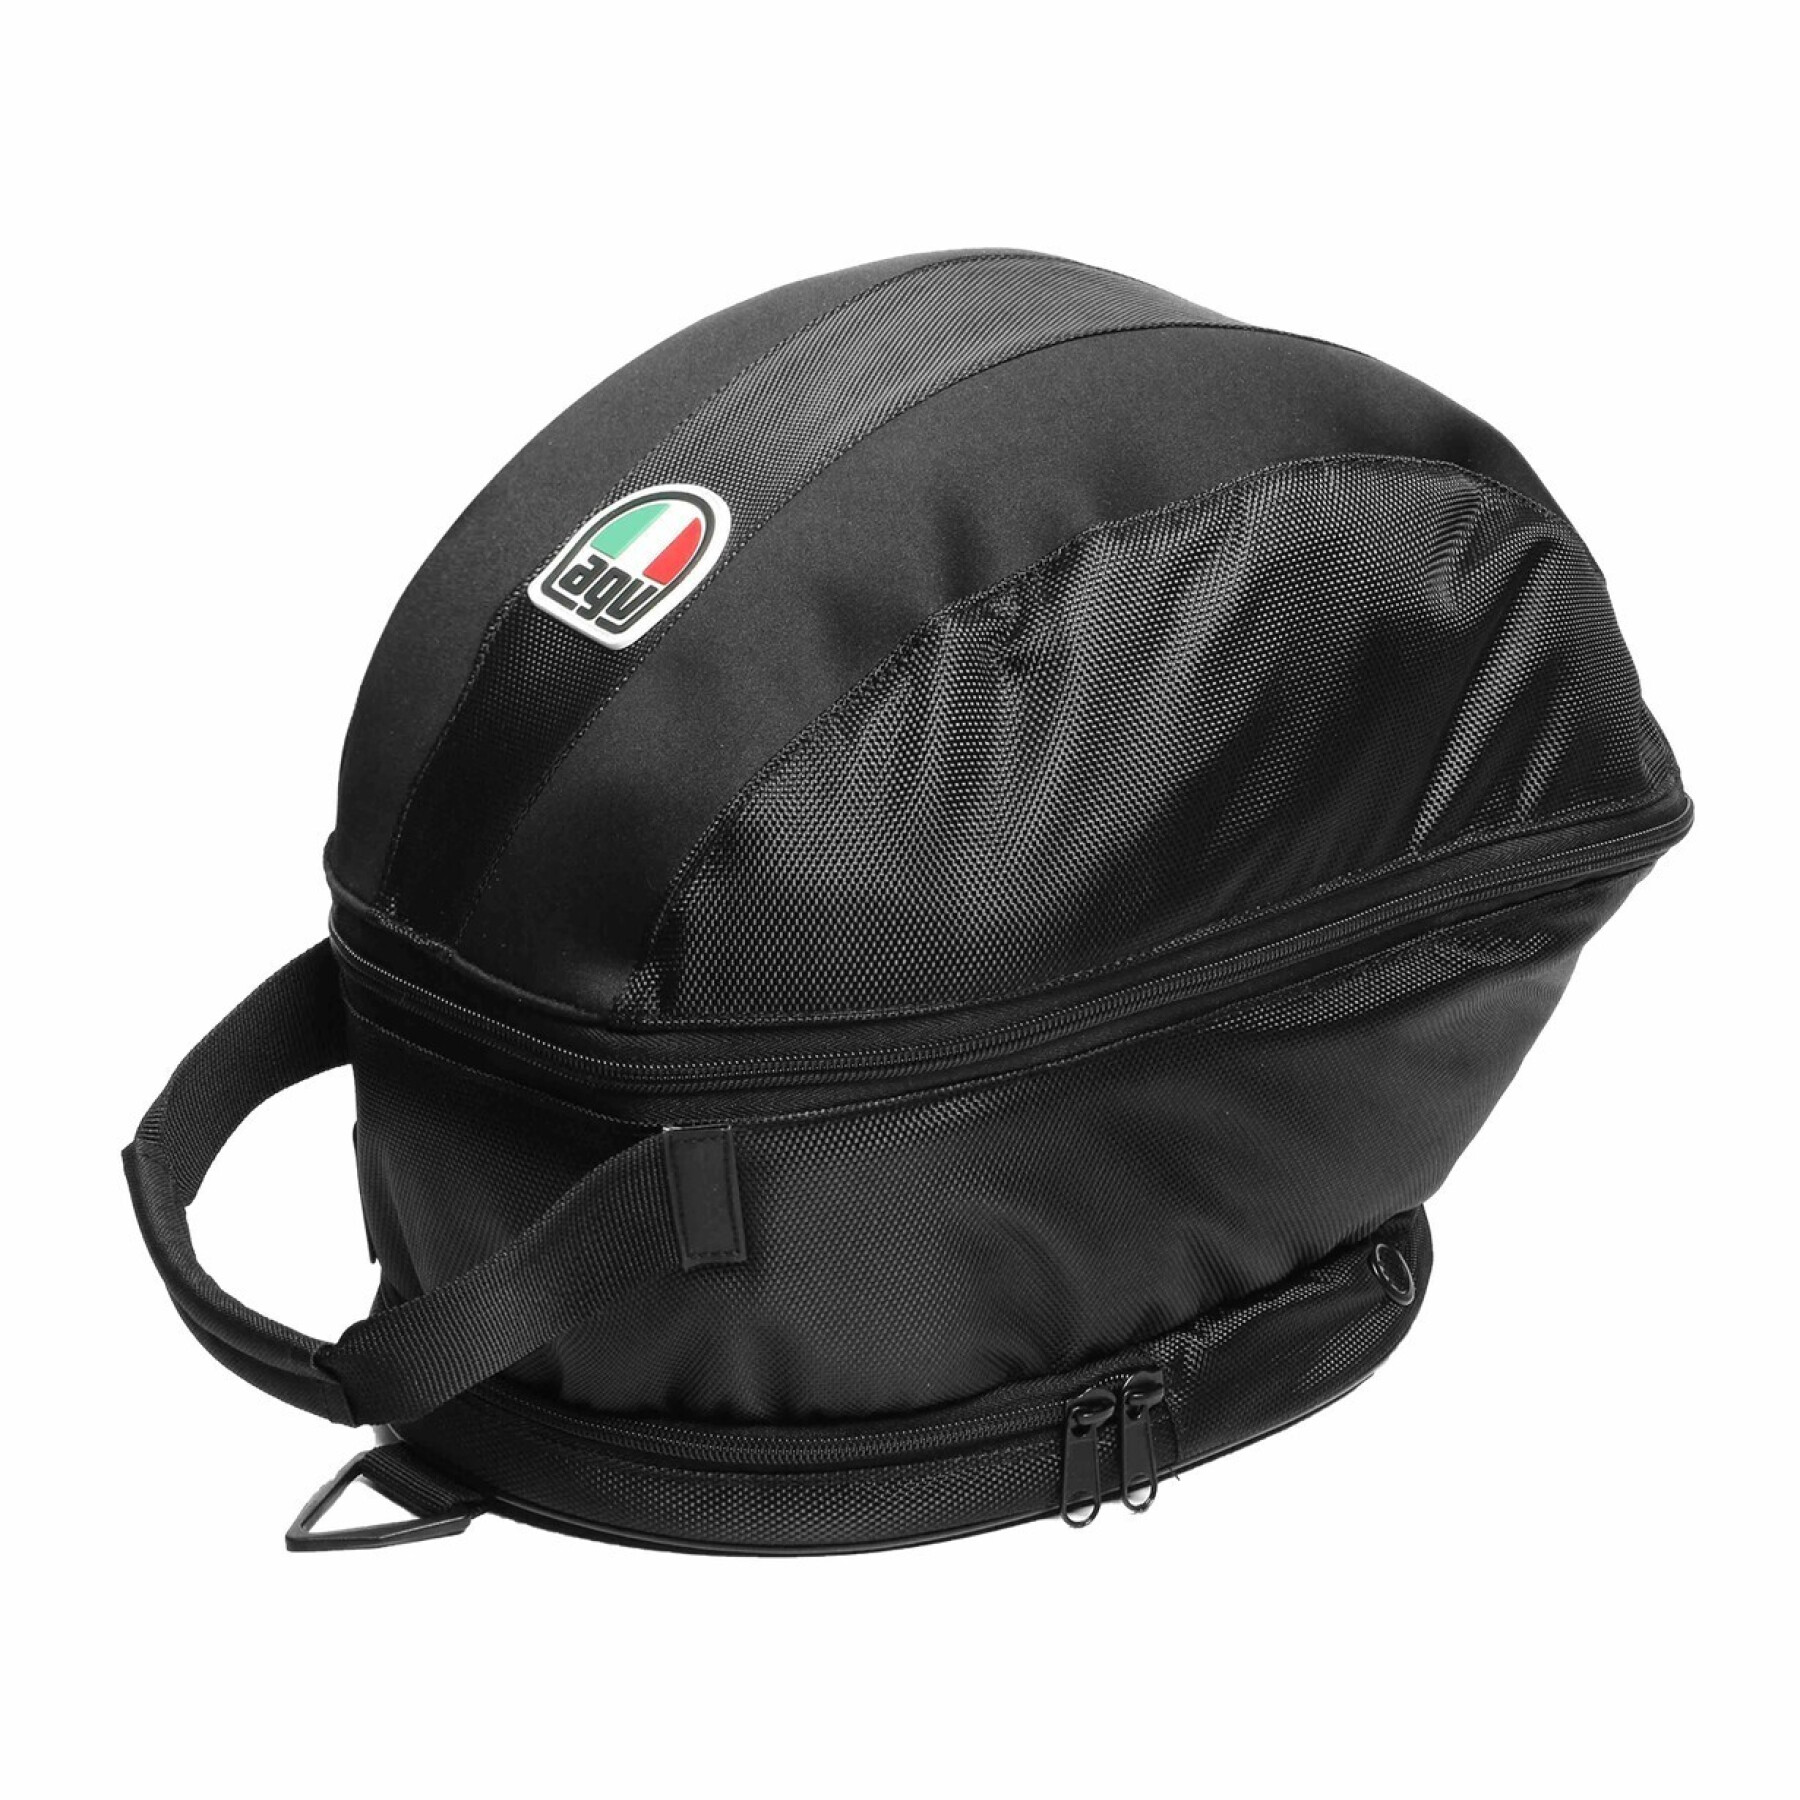 Motorcycle helmet bag AGV